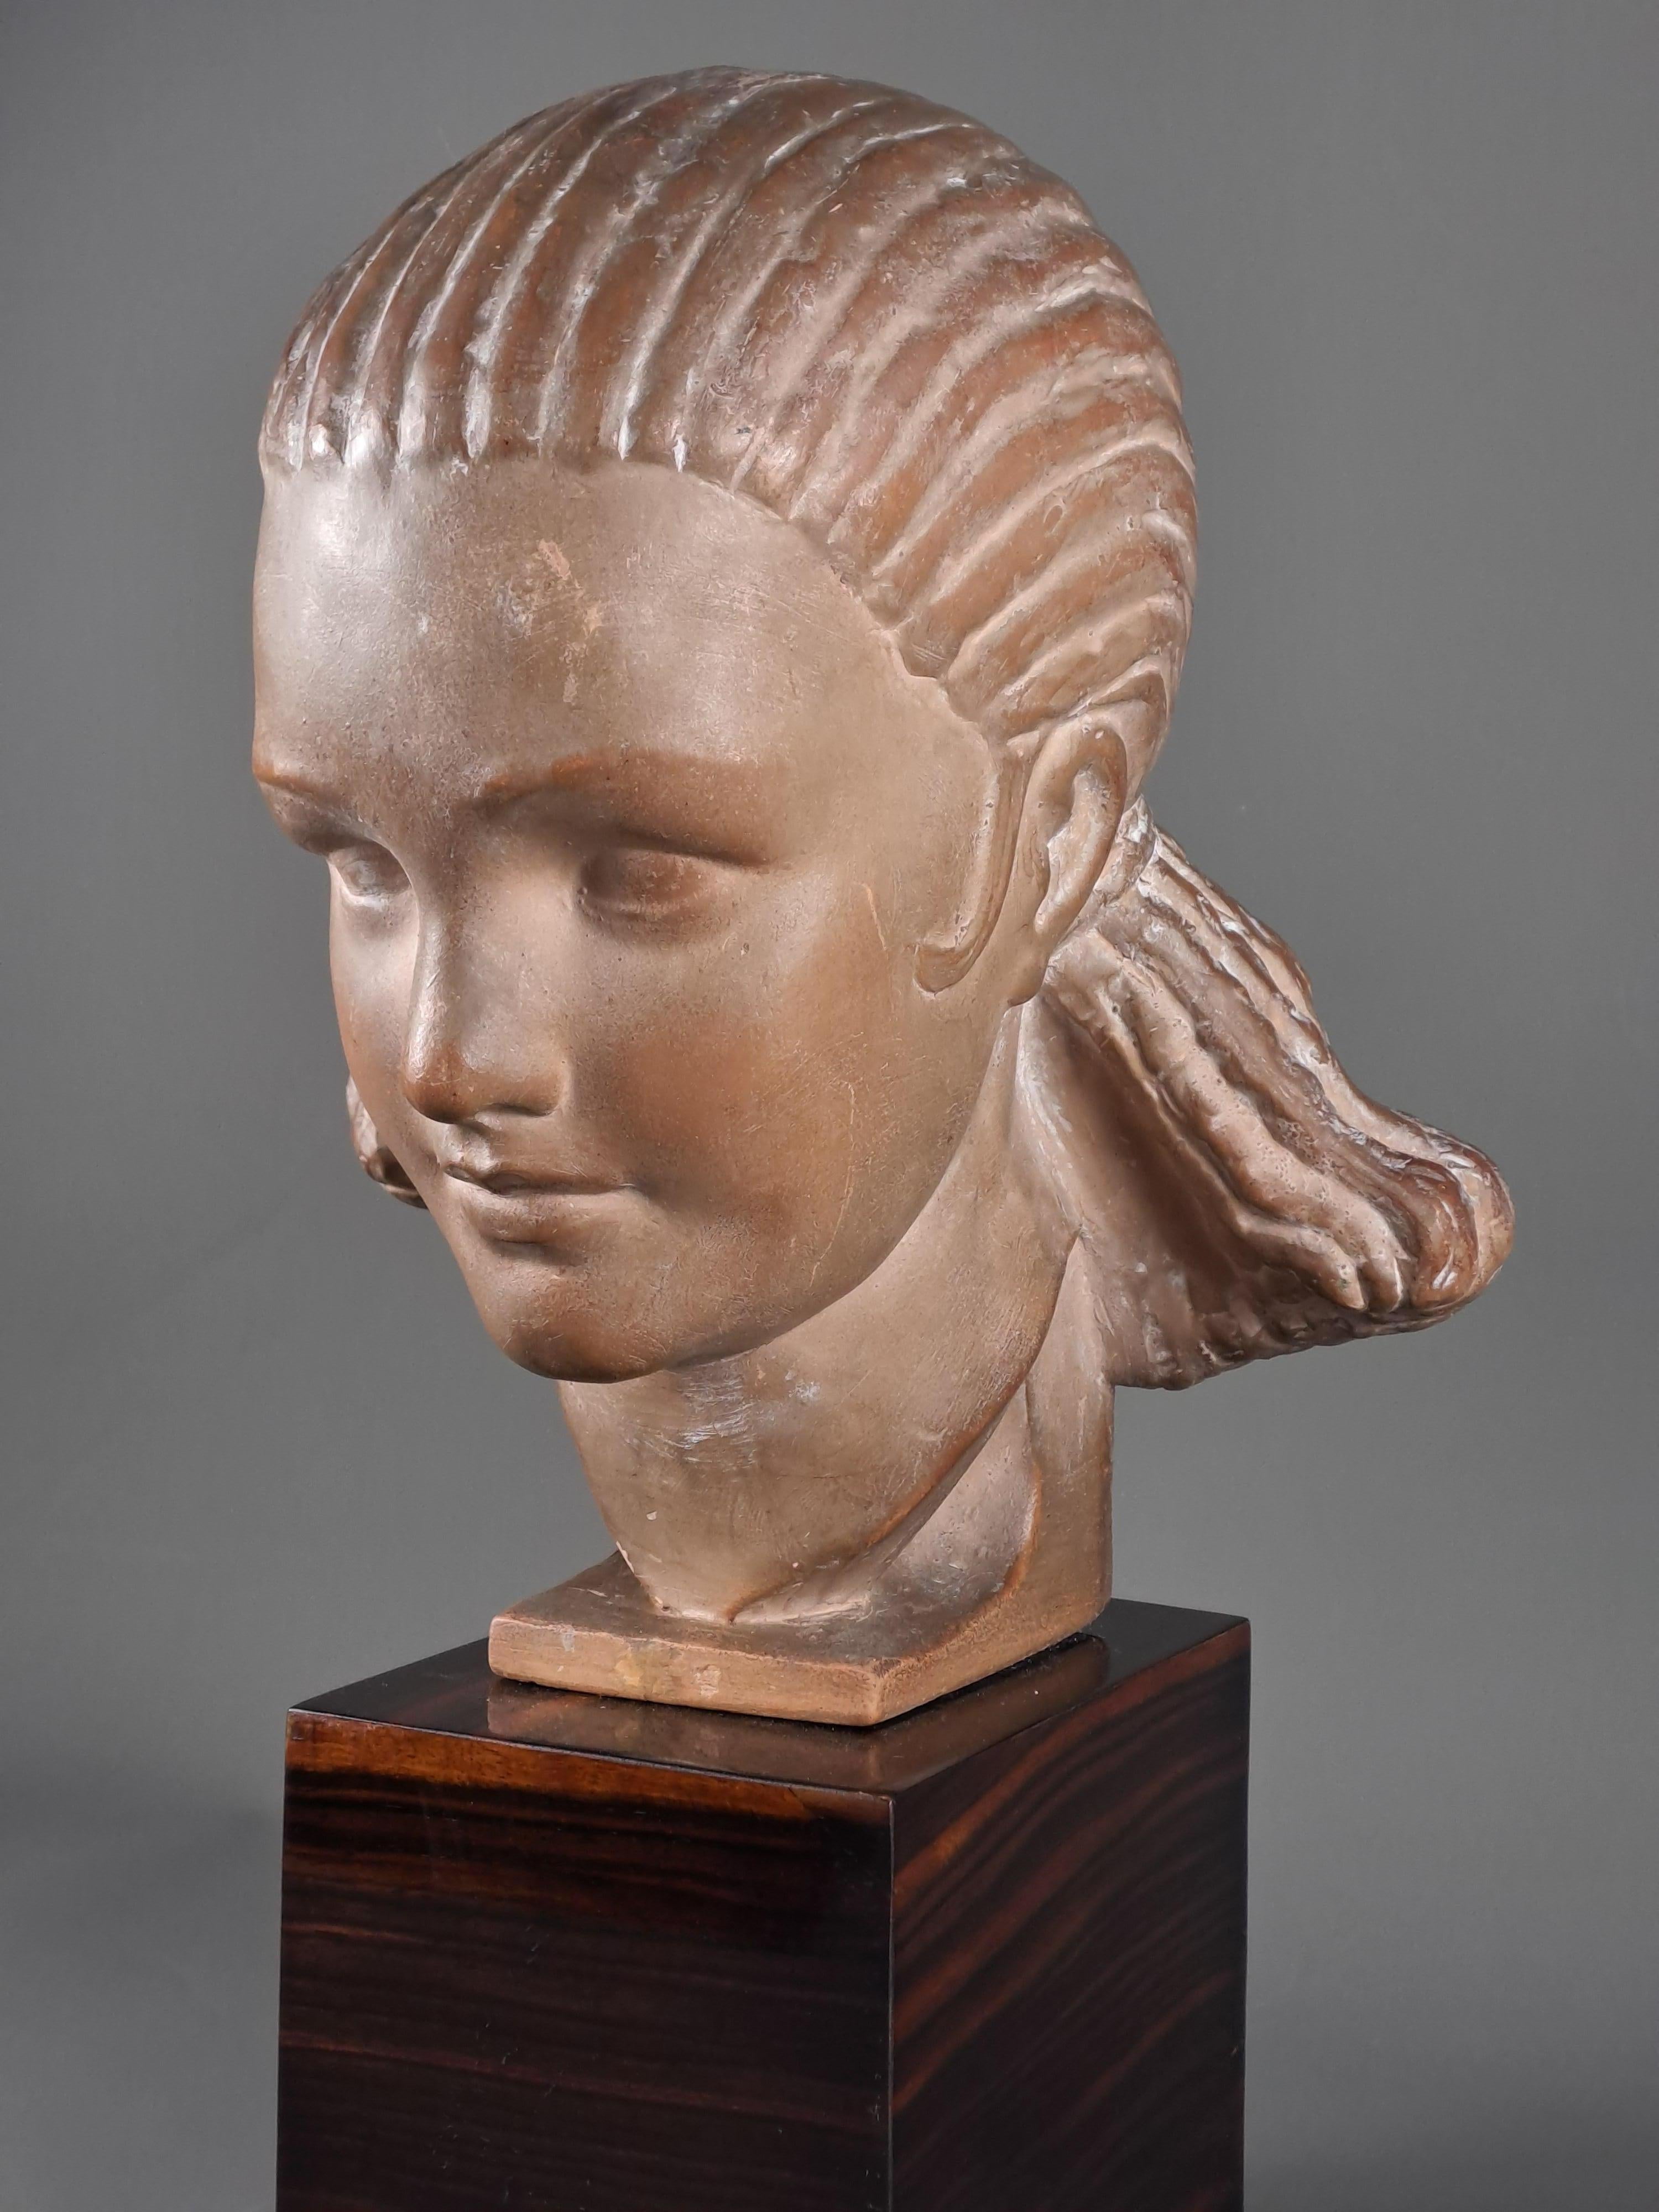 Marcel Bouraine (1886-1948)

Terrakotta-Skulptur, die die Büste einer schönen jungen Frau mit sehr feinen Gesichtszügen und einer Frisur aus feinen Zöpfen darstellt, die nach hinten gezogen und in einer Art großem, ausladendem Dutt gehalten